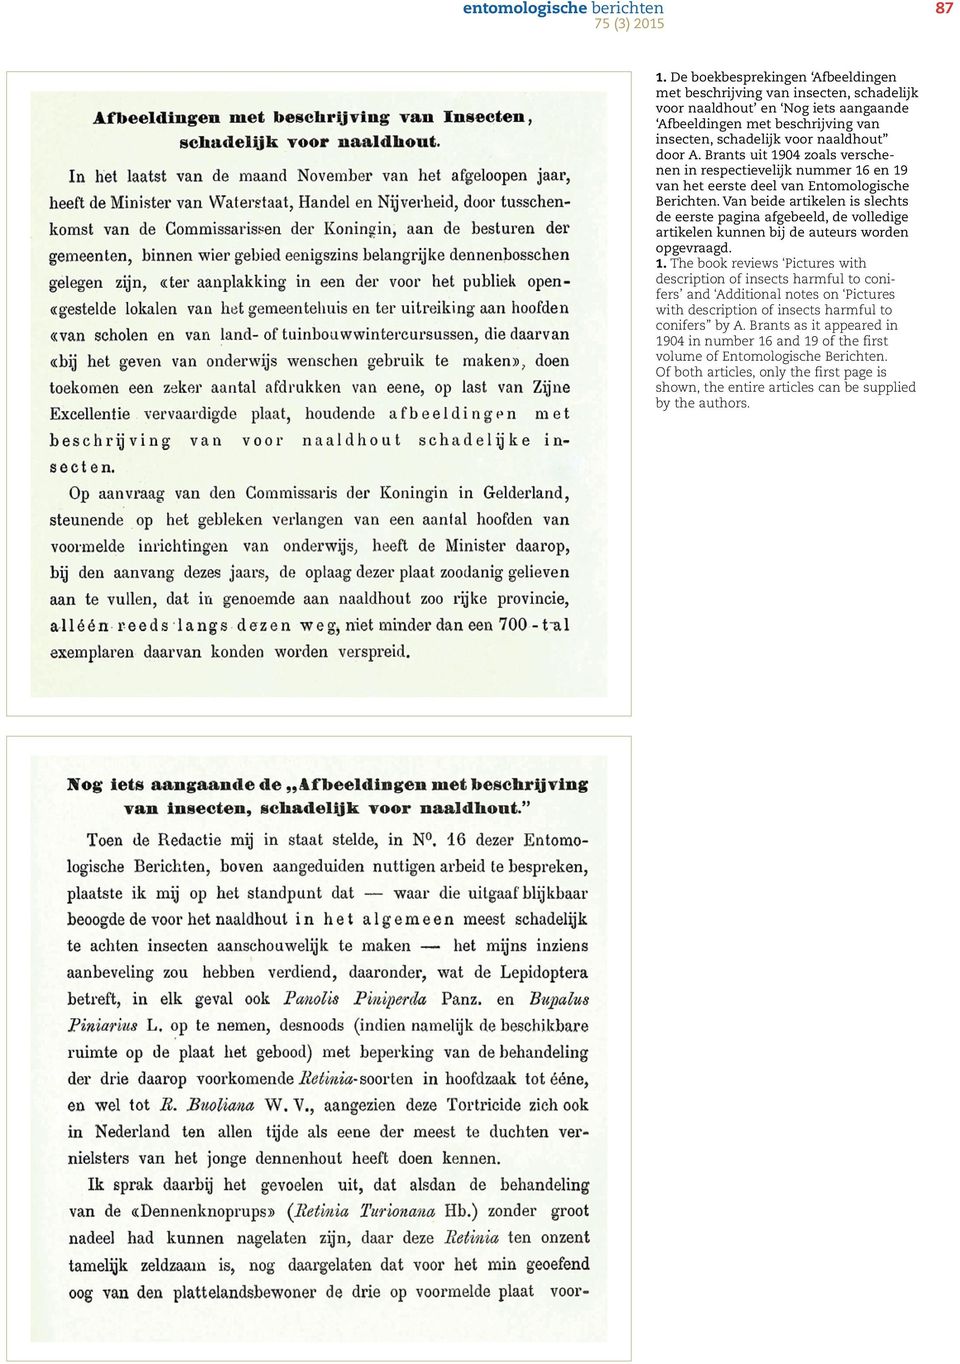 Brants uit 1904 zoals verschenen in respectievelijk nummer 16 en 19 van het eerste deel van Entomologische Berichten.